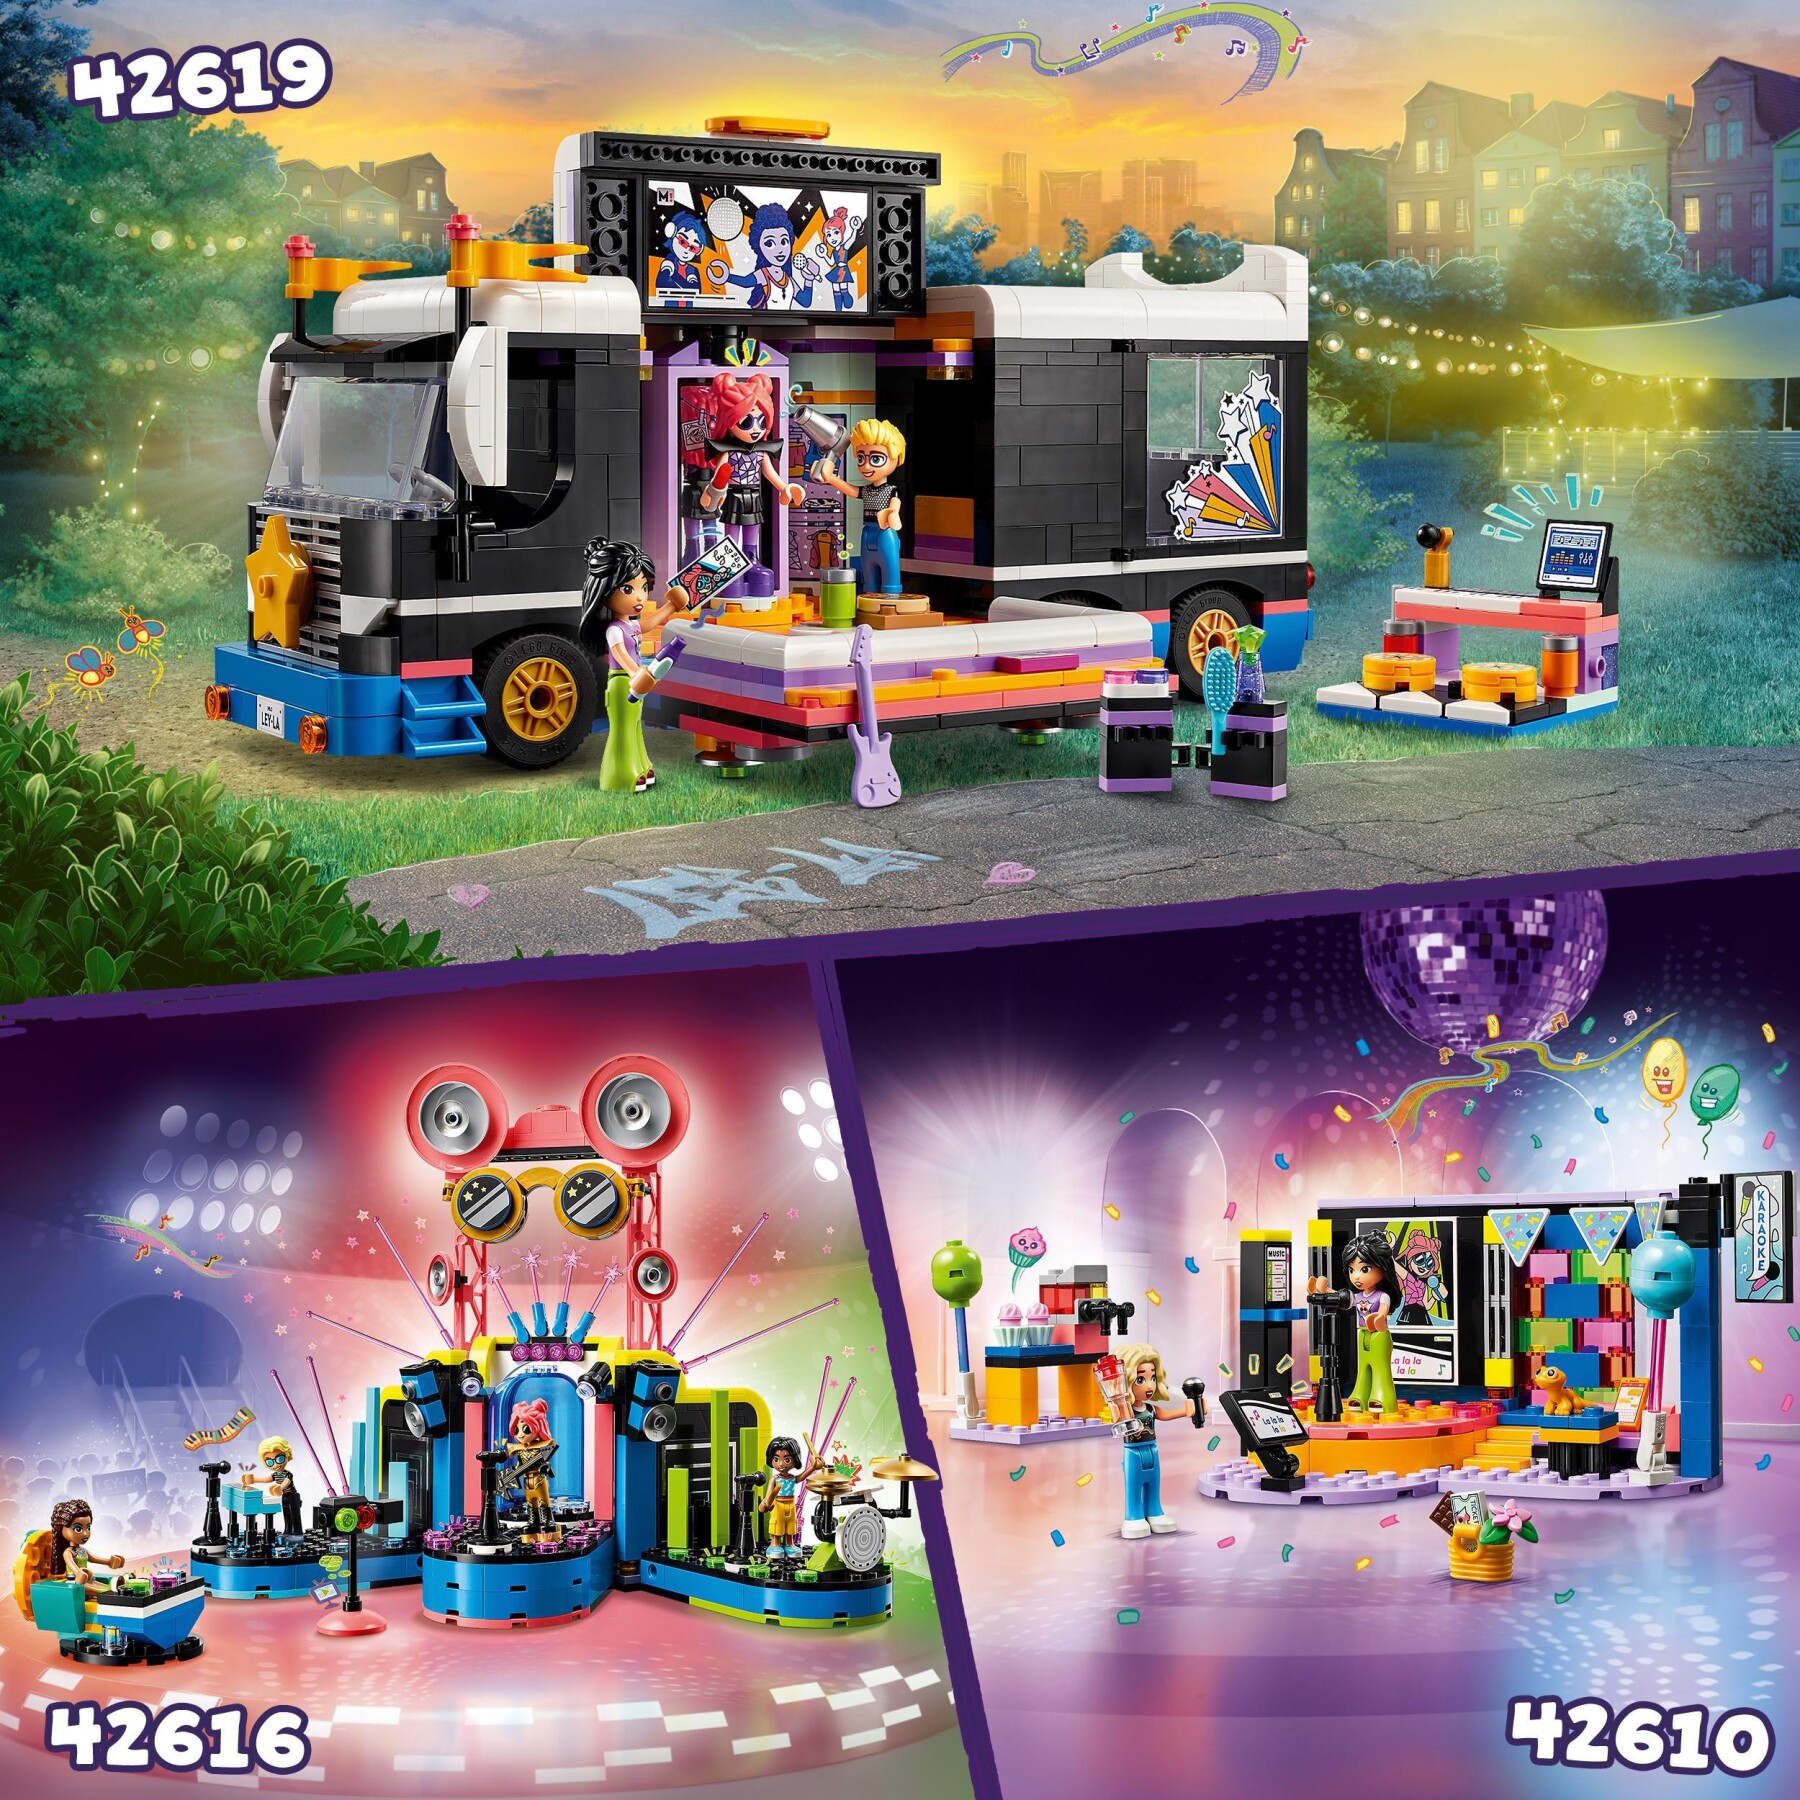 Lego friends 42610 karaoke party, giochi musicali per bambini di 6+ anni con palco girevole e 2 mini bamboline di liann e nova - LEGO FRIENDS